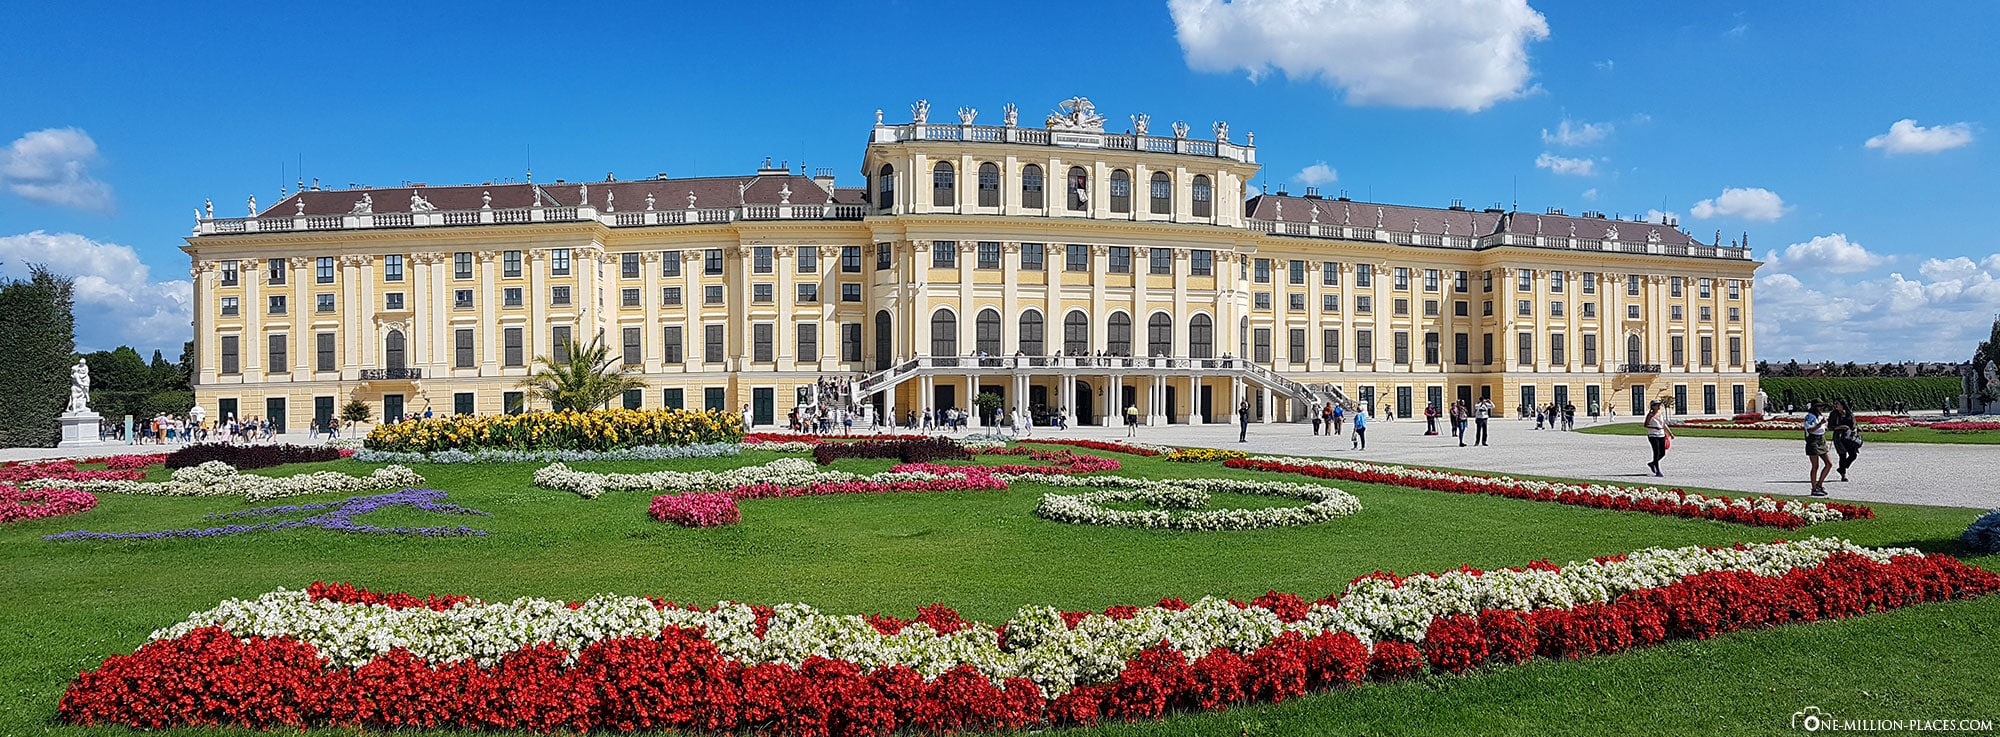 Panoramabild, Schloss Schönbrunn, Wien, Sehenswürdigkeiten, Things to do, Attraktionen, Sightseeing, Reisetipps